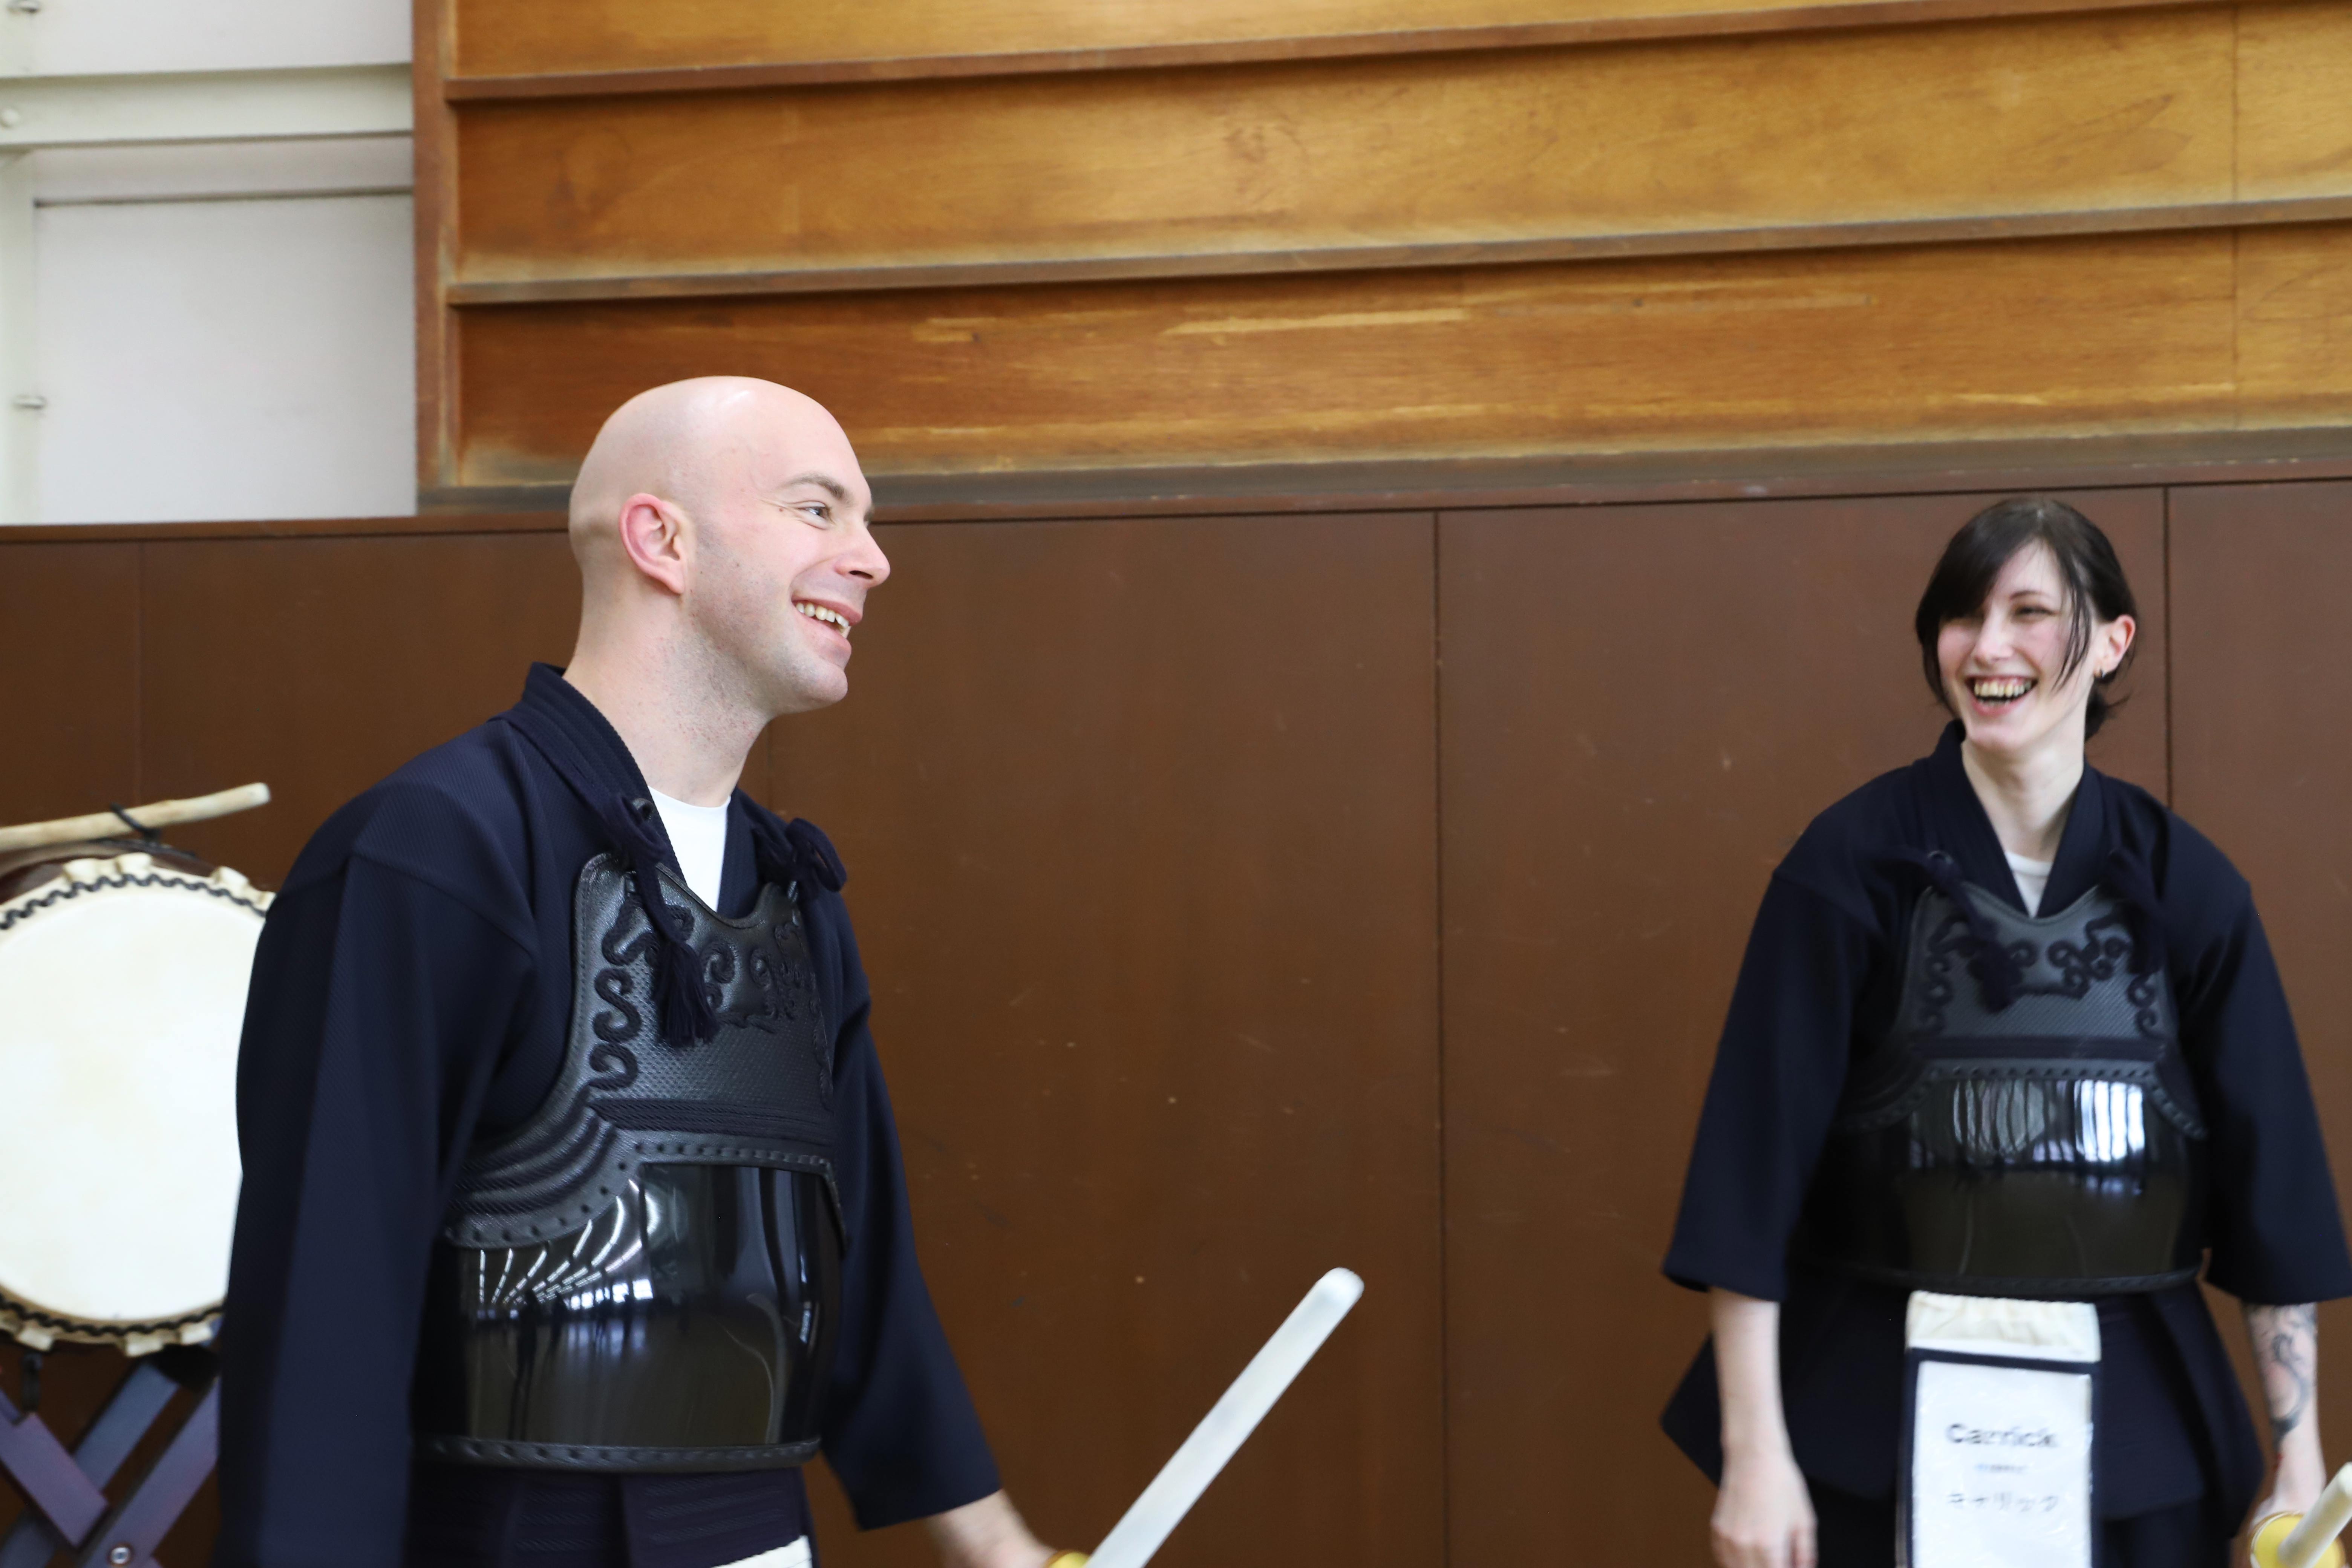 Cultivate the samurai spirit through kendo